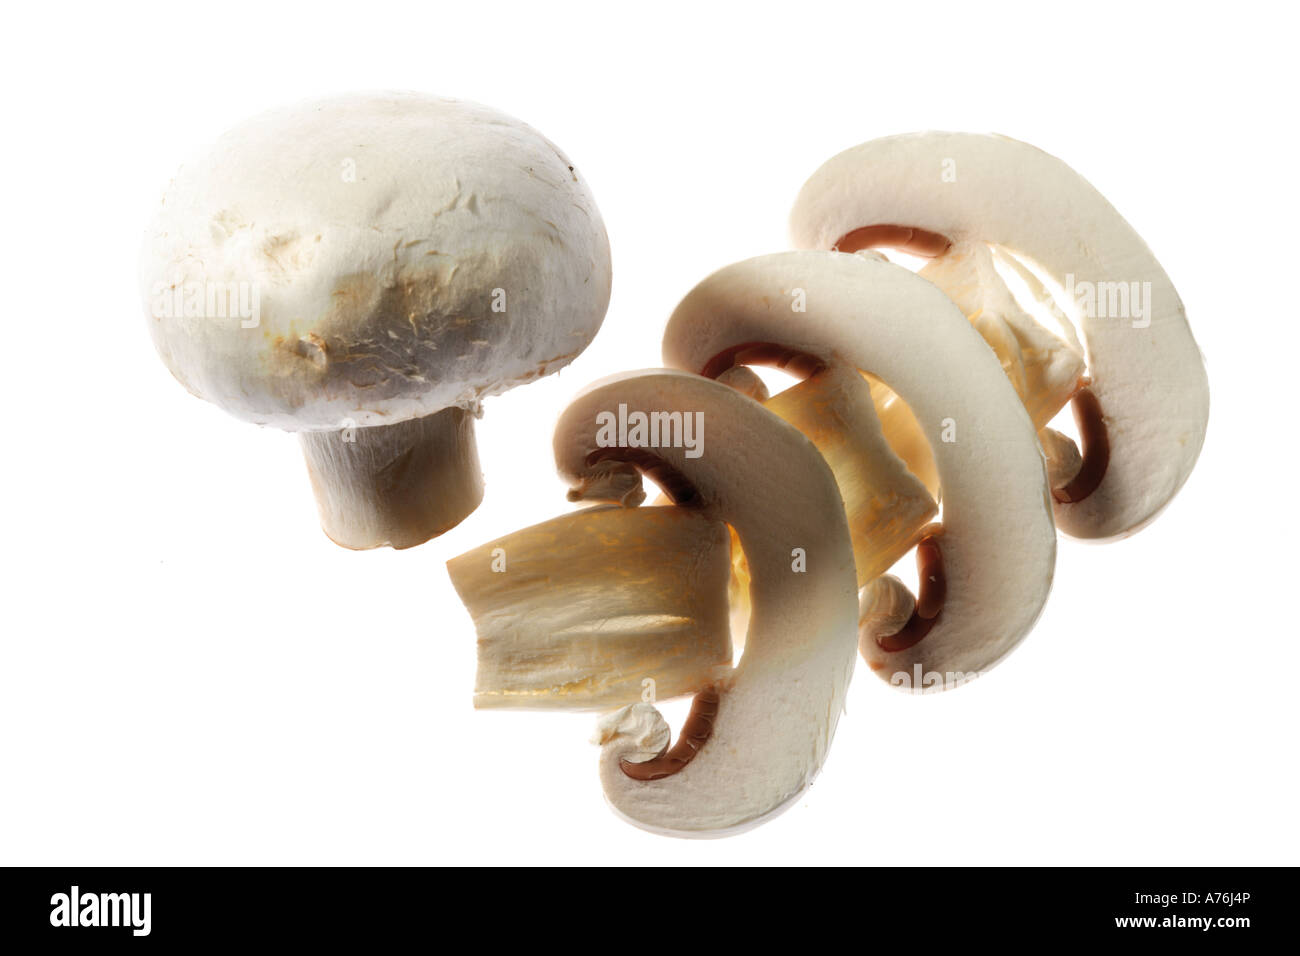 Tagliate a fette di funghi bianco, close-up Foto Stock